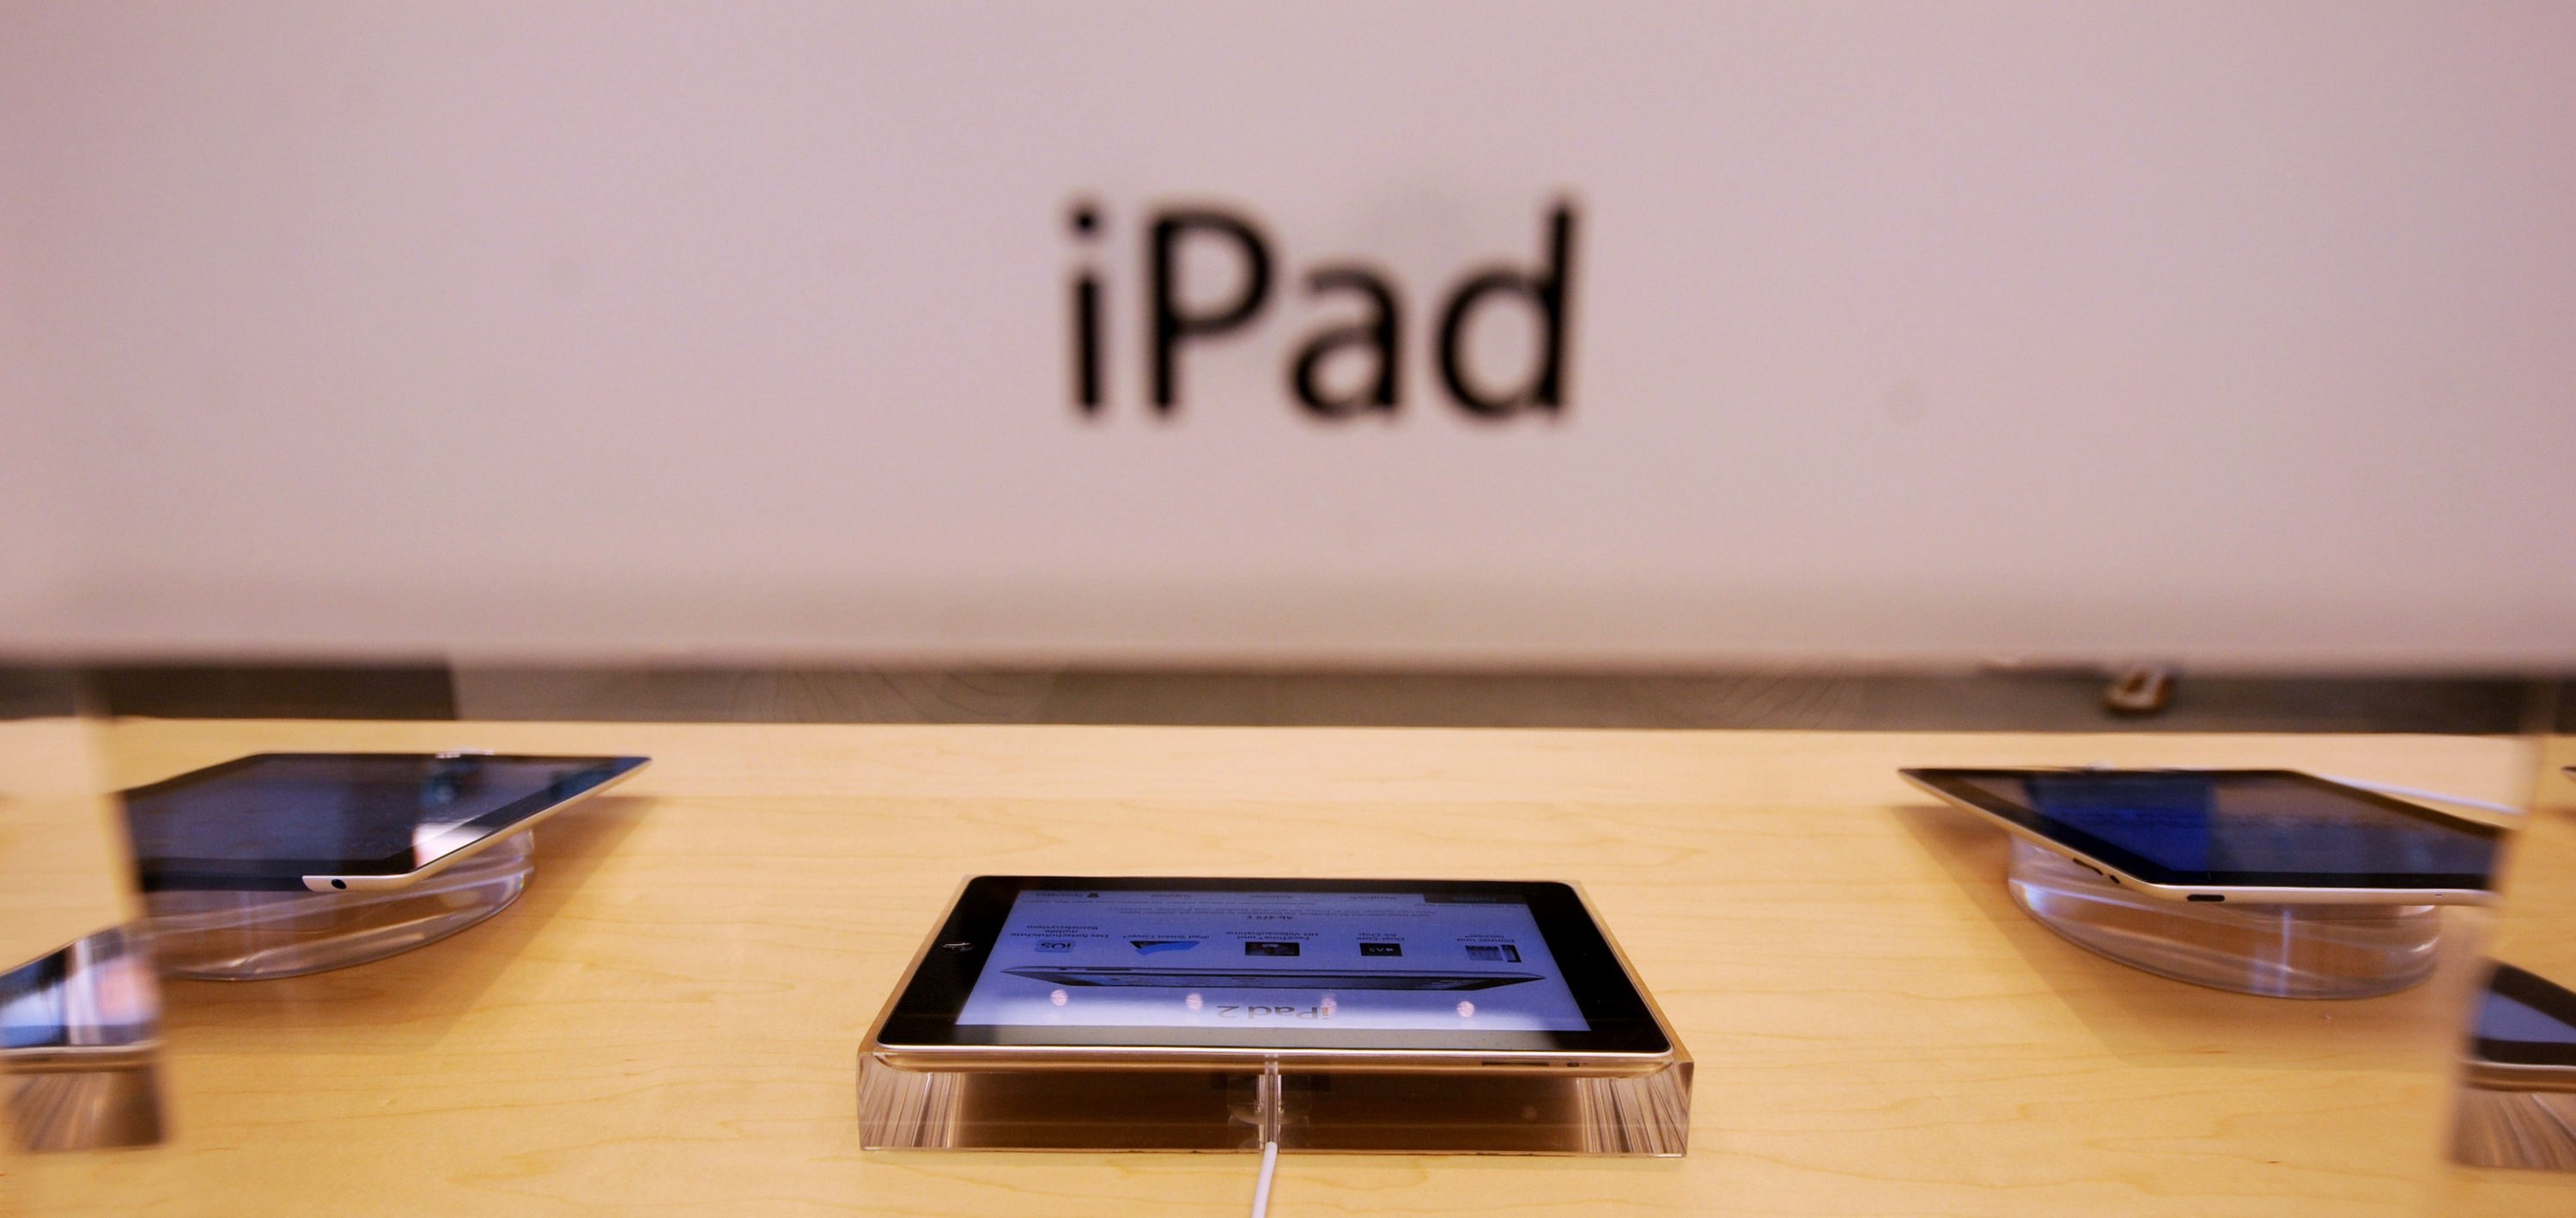 Китайците от Proview искат поне $400 млн. за правата над името ”iPad”